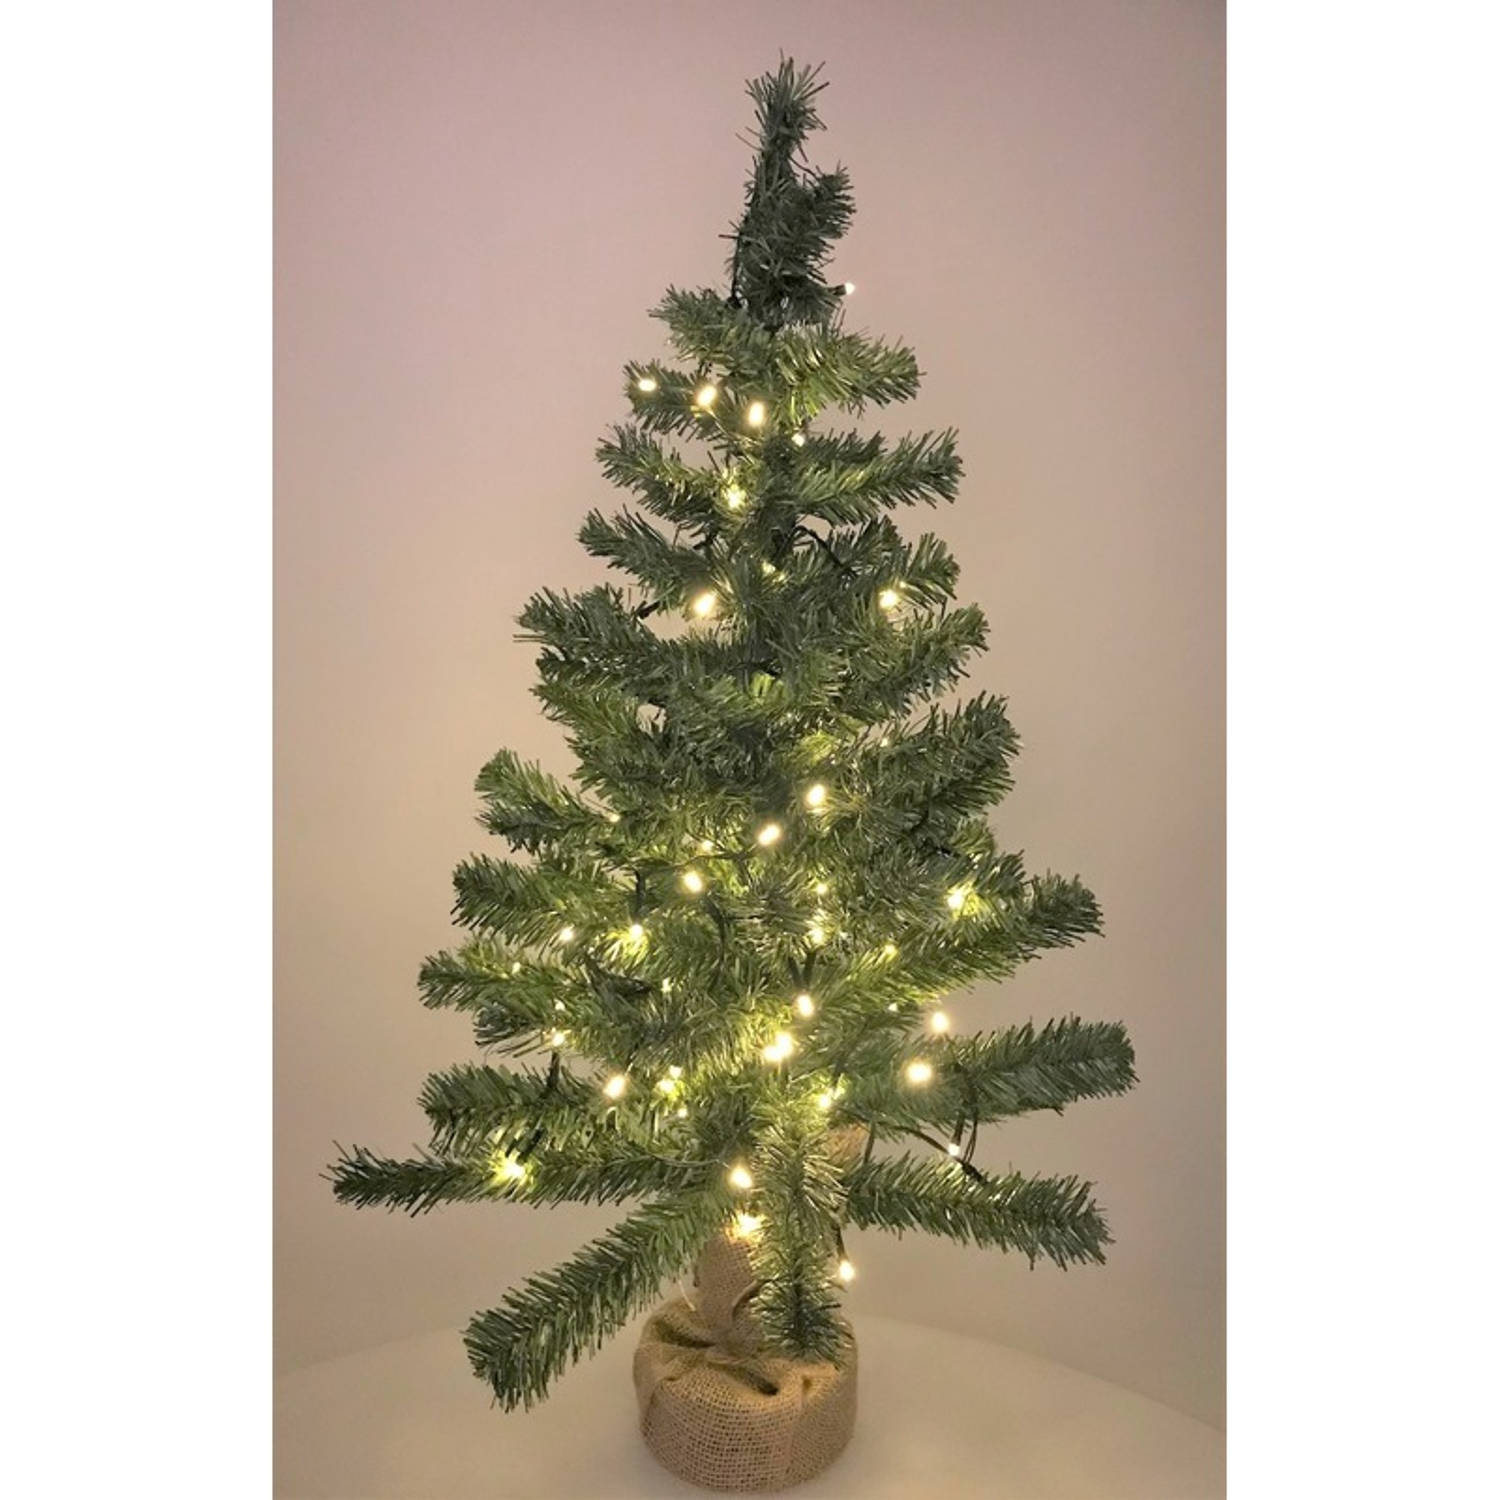 Editie Pakistan influenza Kleine kerstboom in jute zak inclusief verlichting 75 cm - Kunstkerstboom |  Blokker